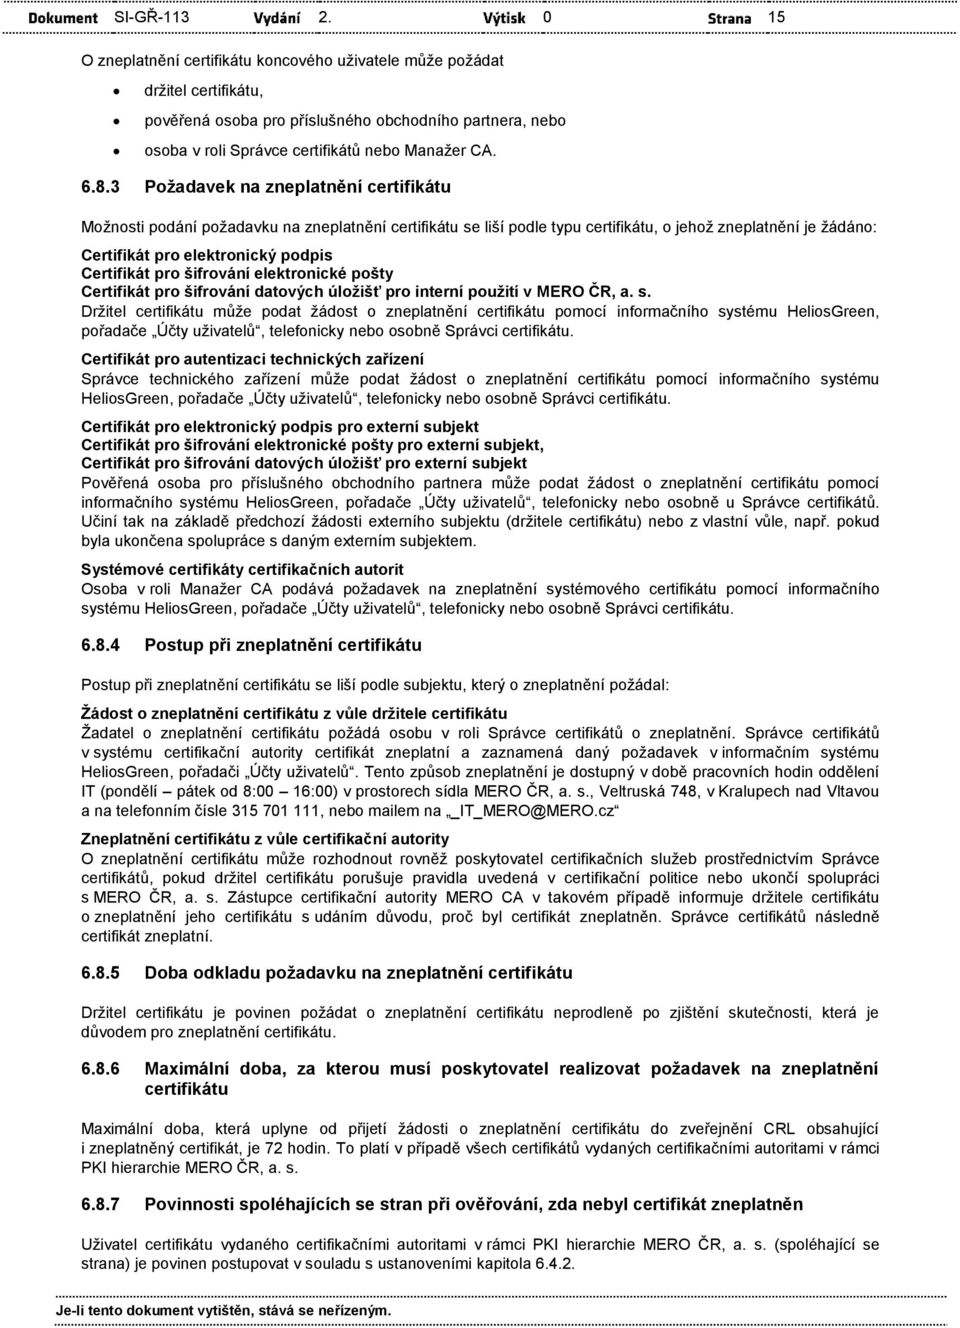 Certifikát pro šifrování datových úložišť pro interní použití v MERO ČR, a. s.